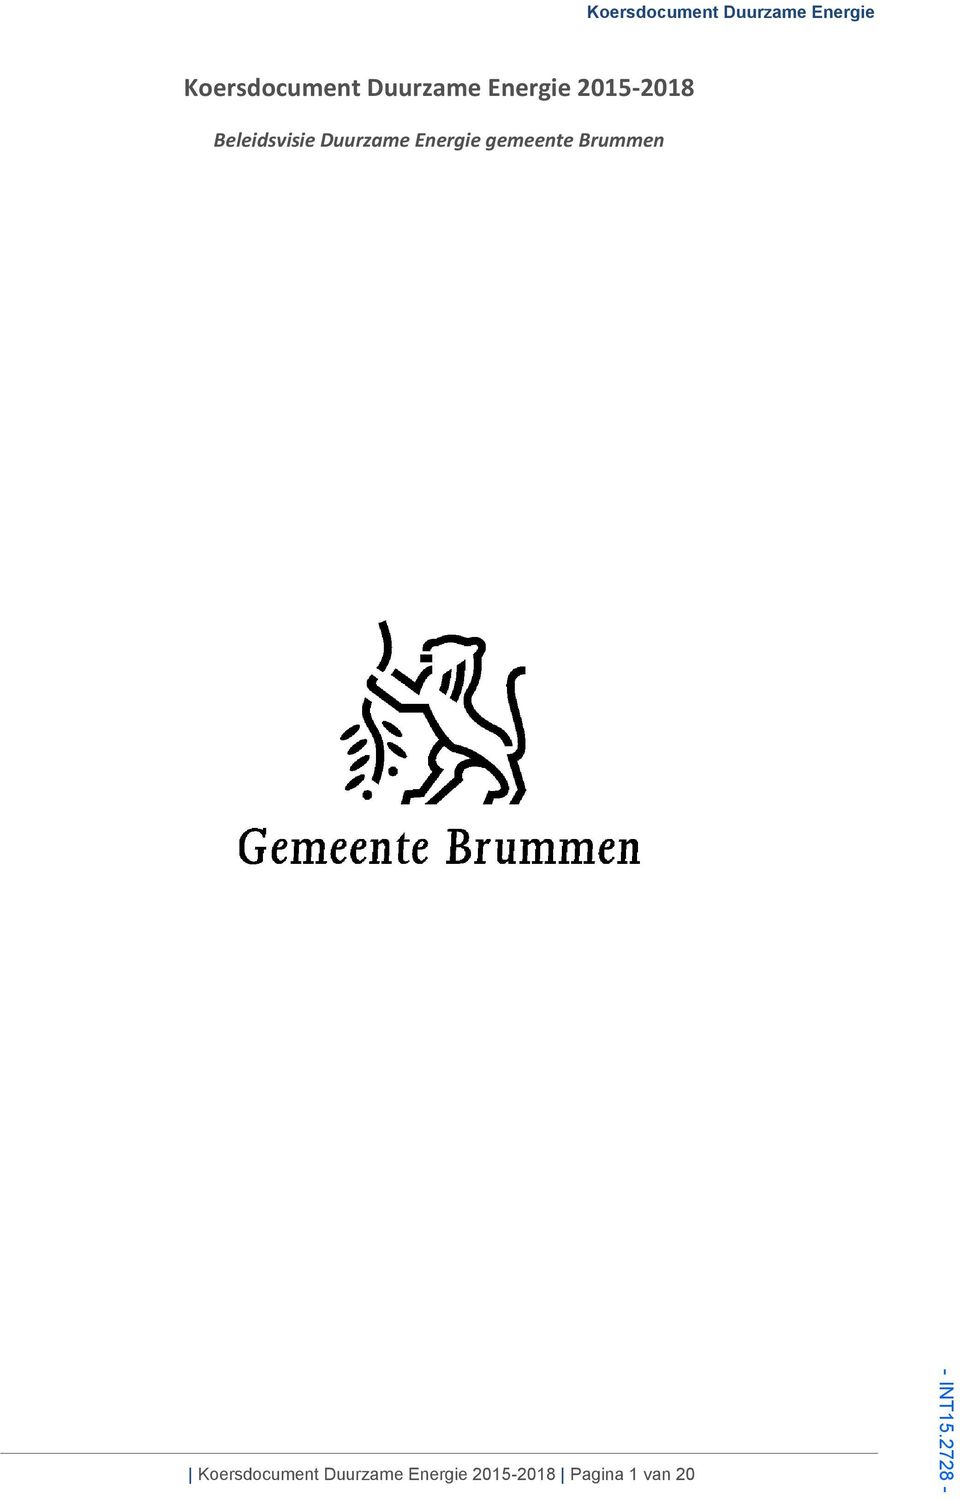 Energie gemeente Brummen  2015-2018